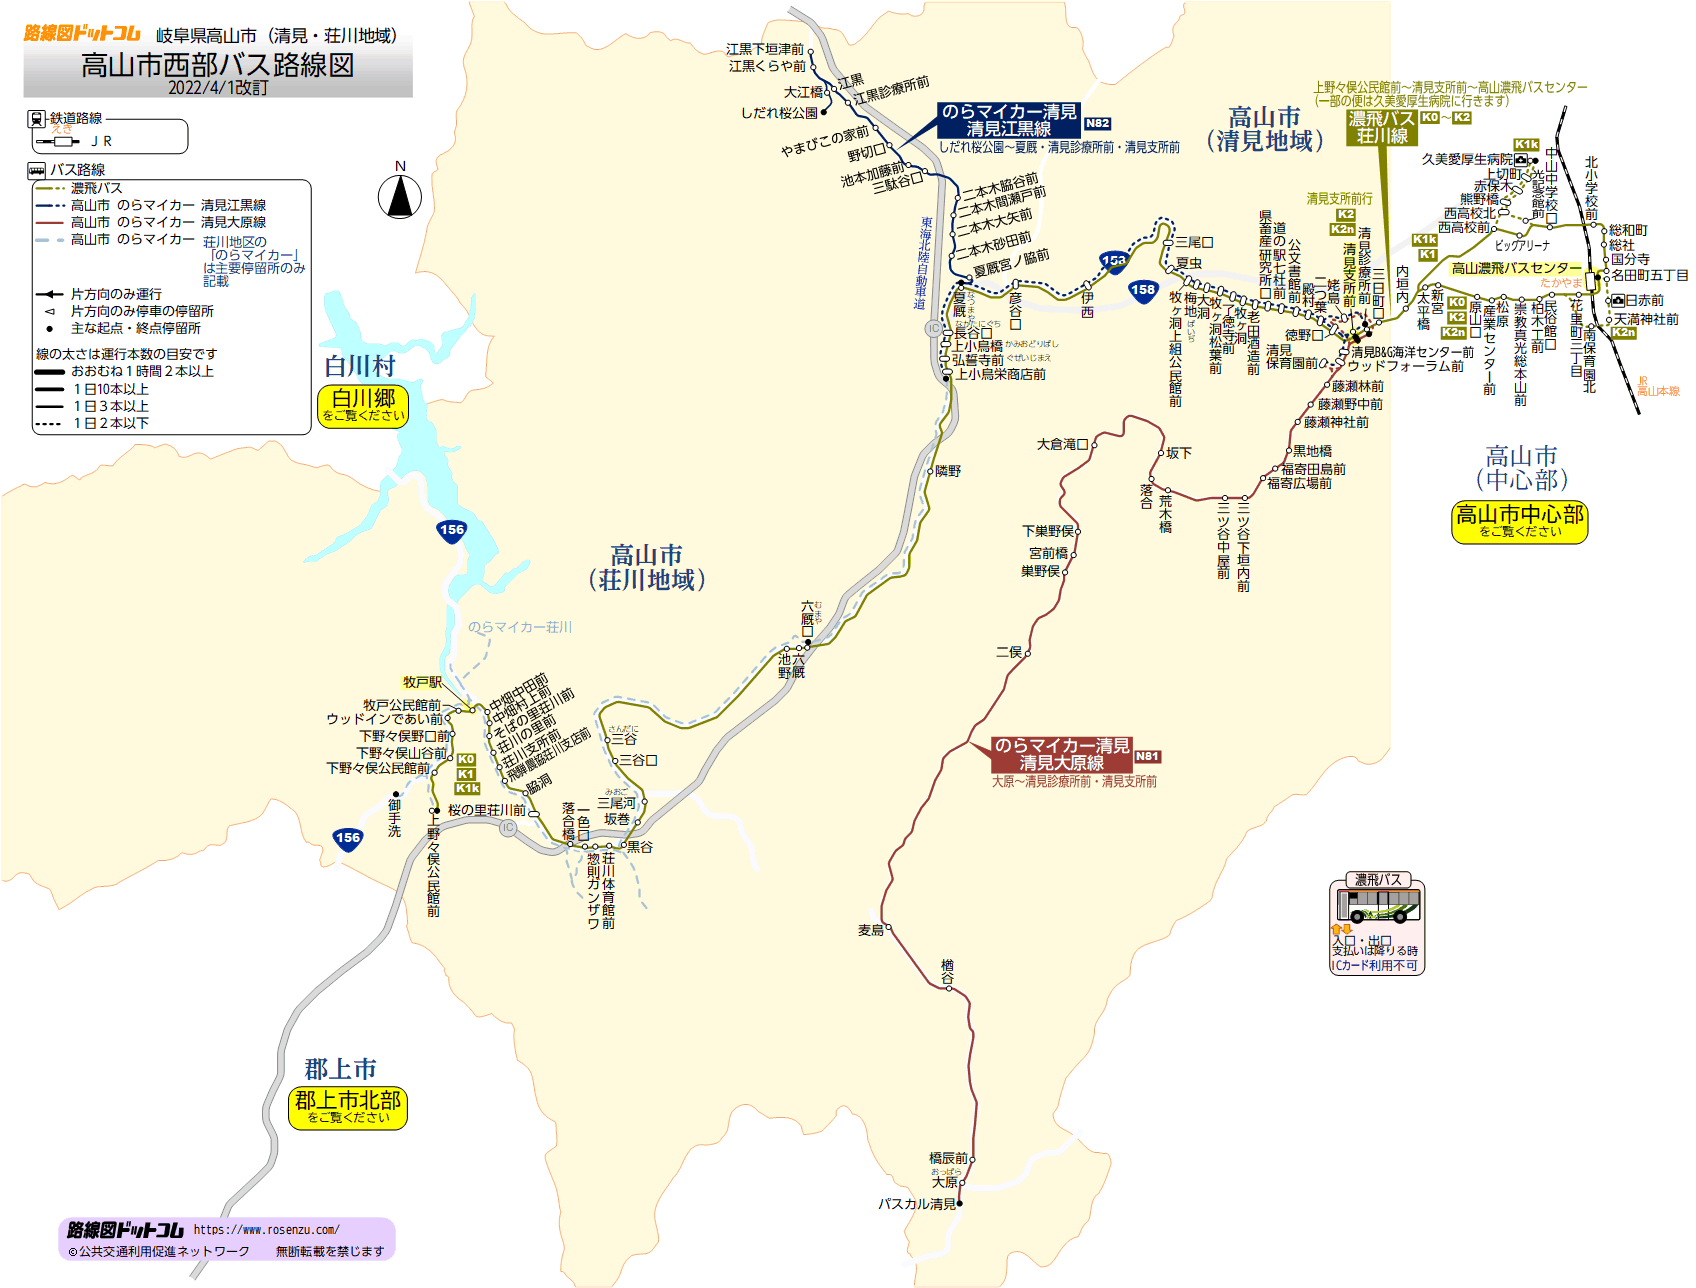 高山市西部バス路線図